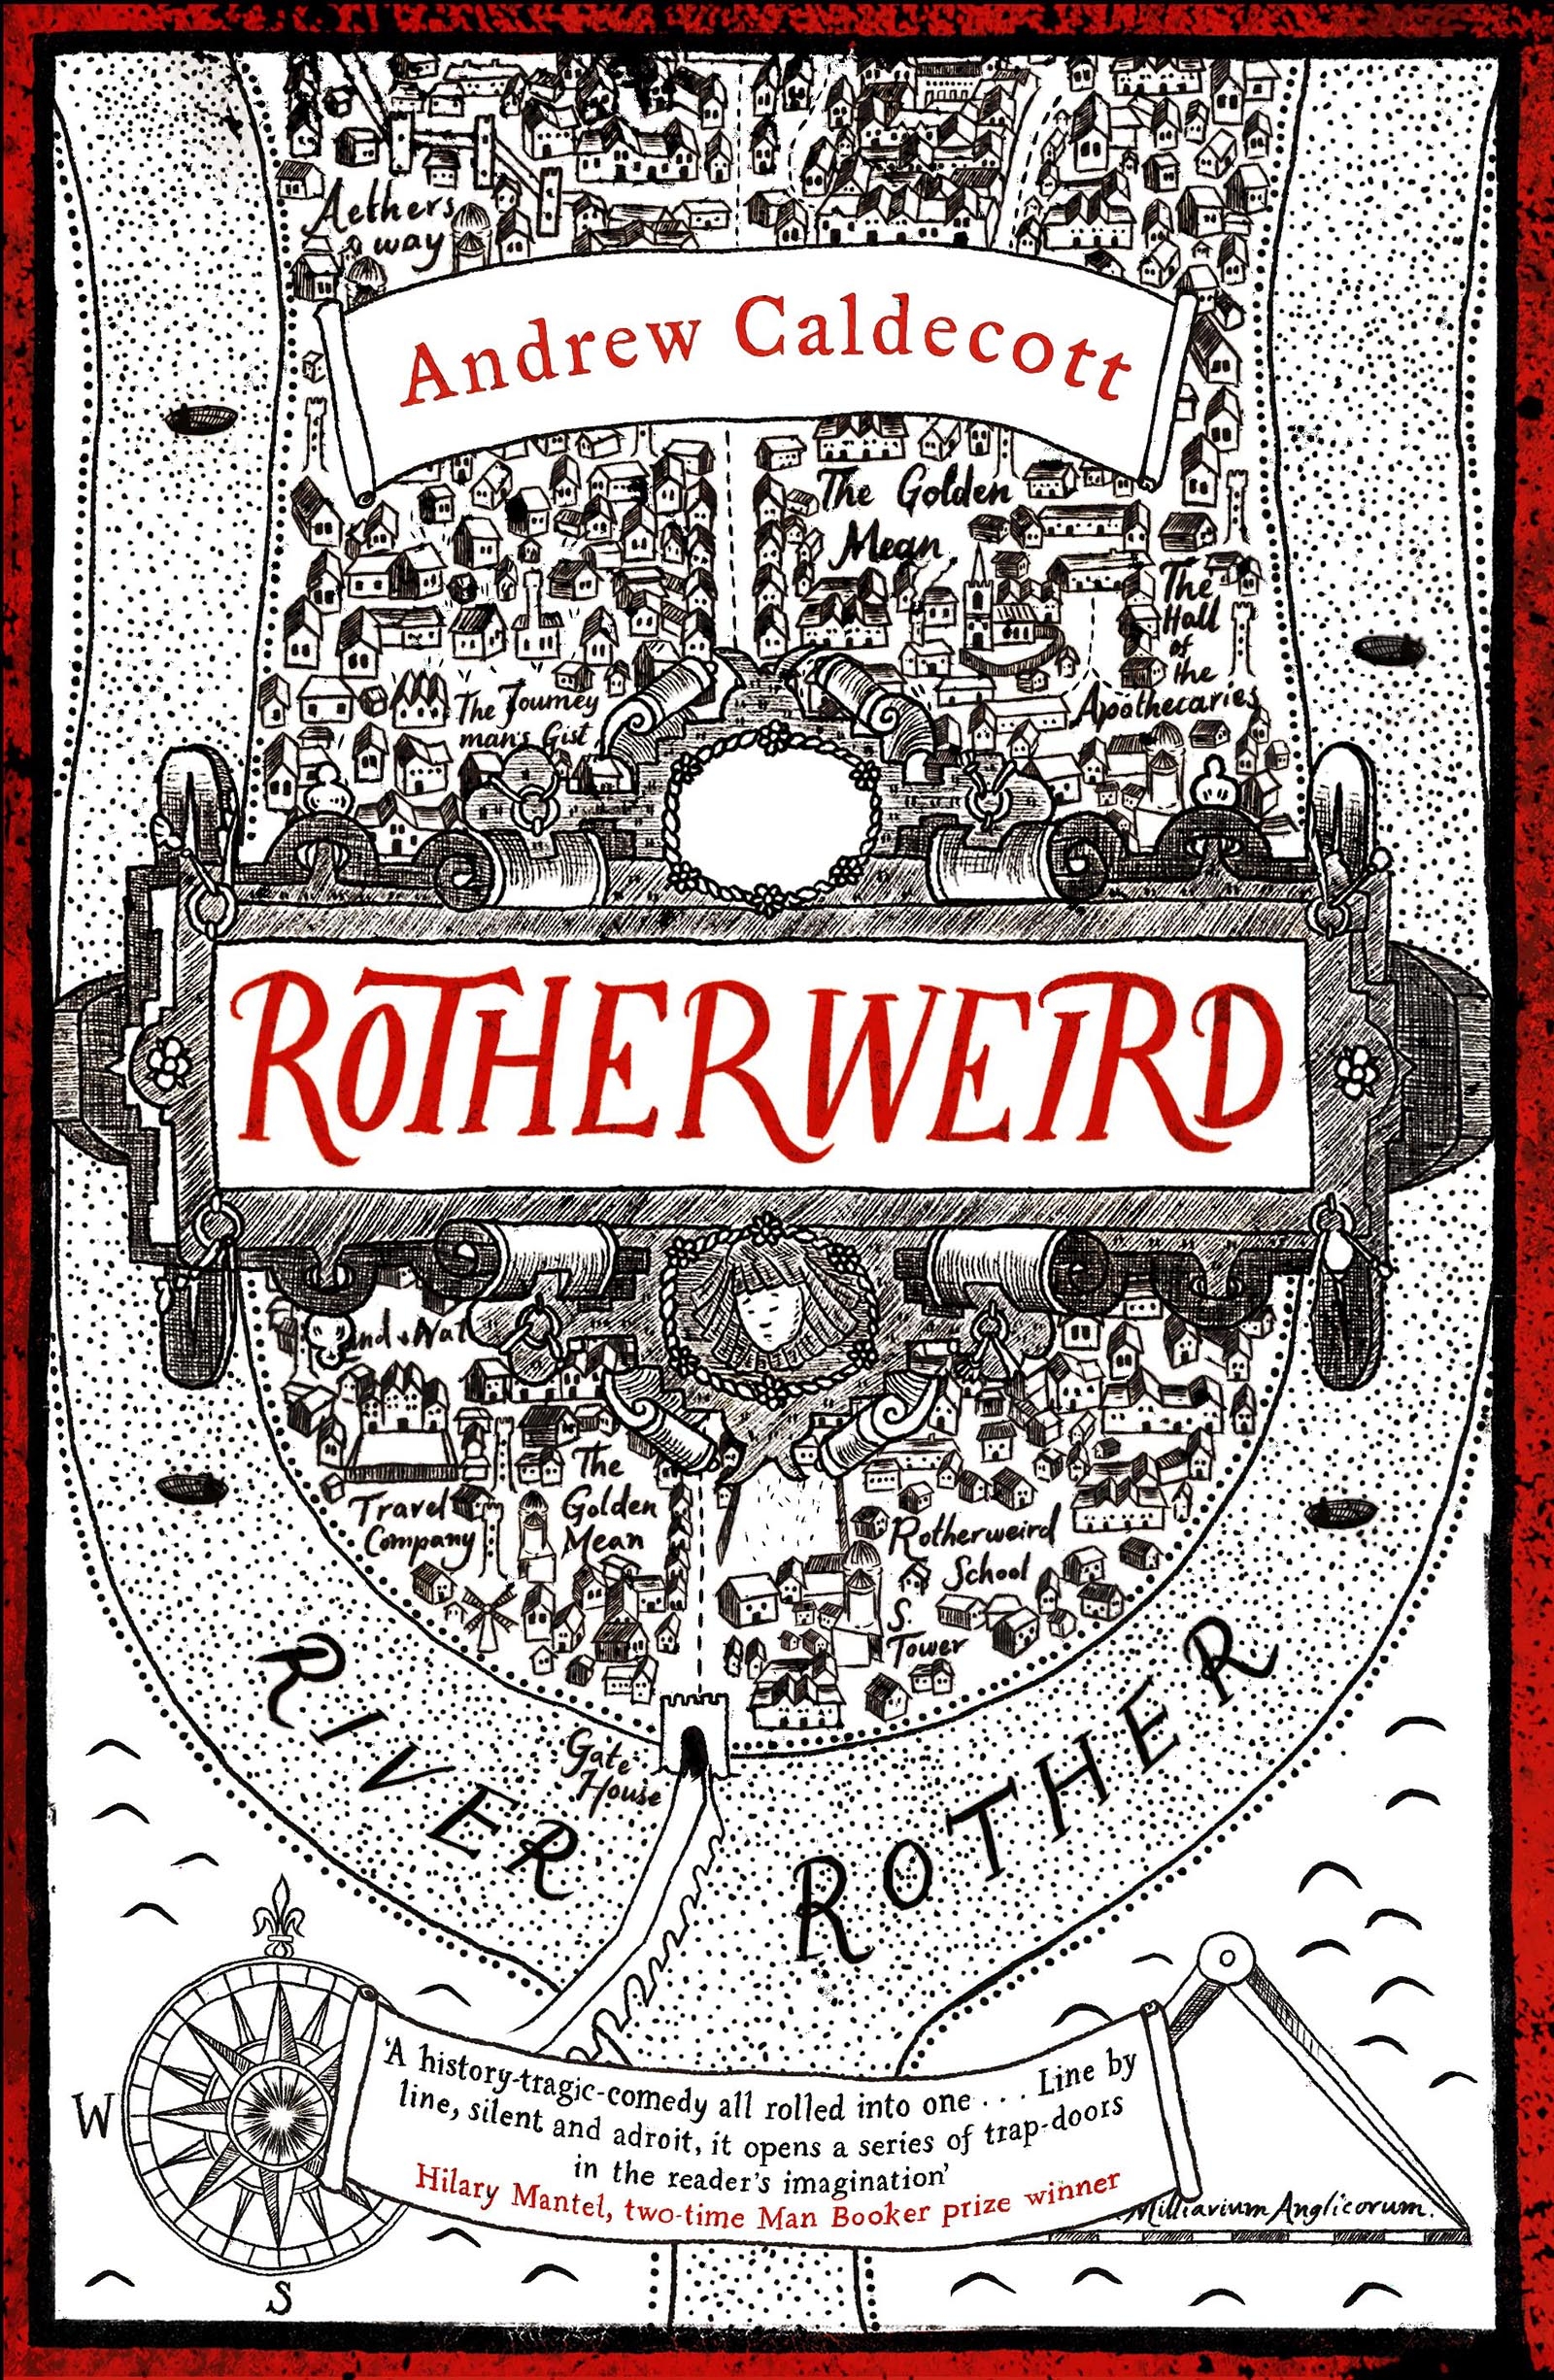 Rotherweird